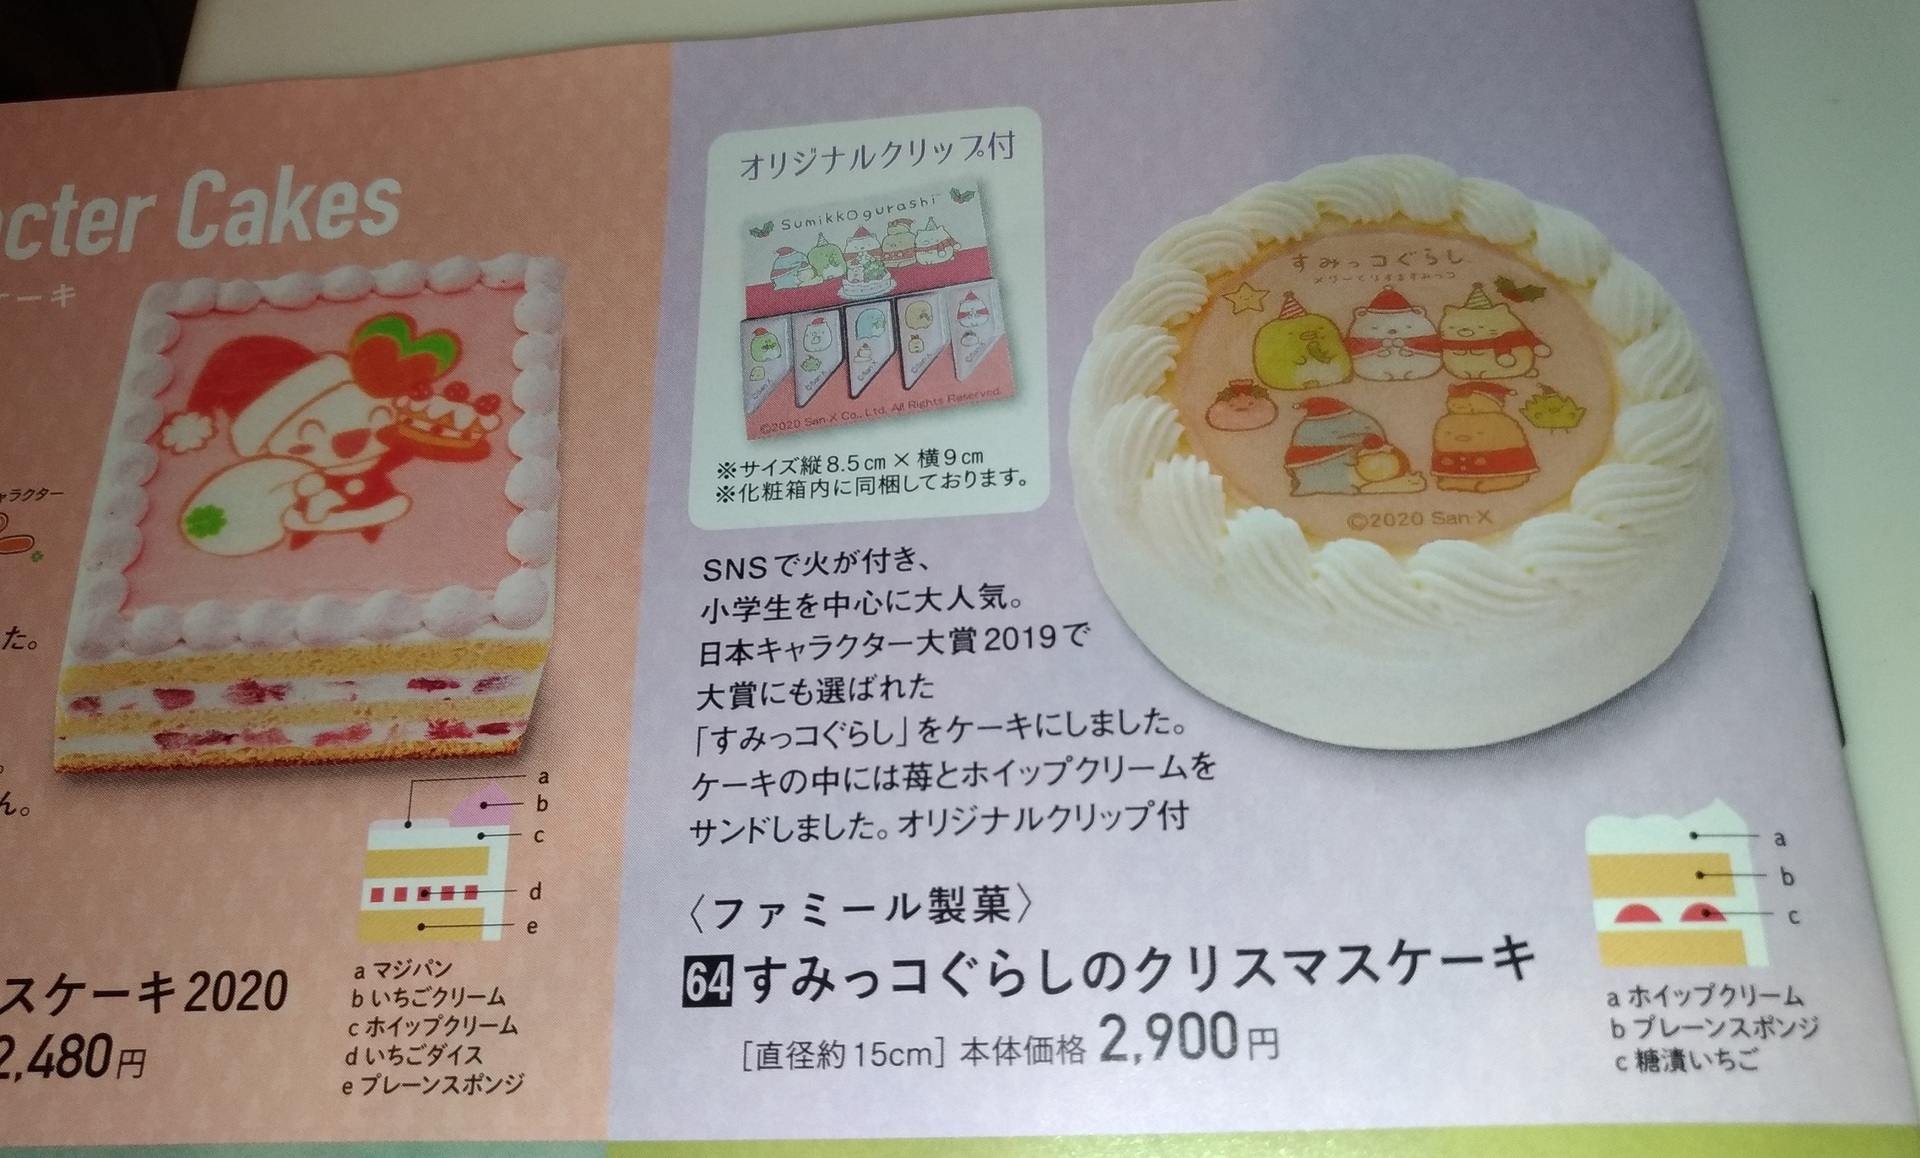 クリスマスケーキ スーパーライフ 大阪おすすめお惣菜野菜をブログでポイントも